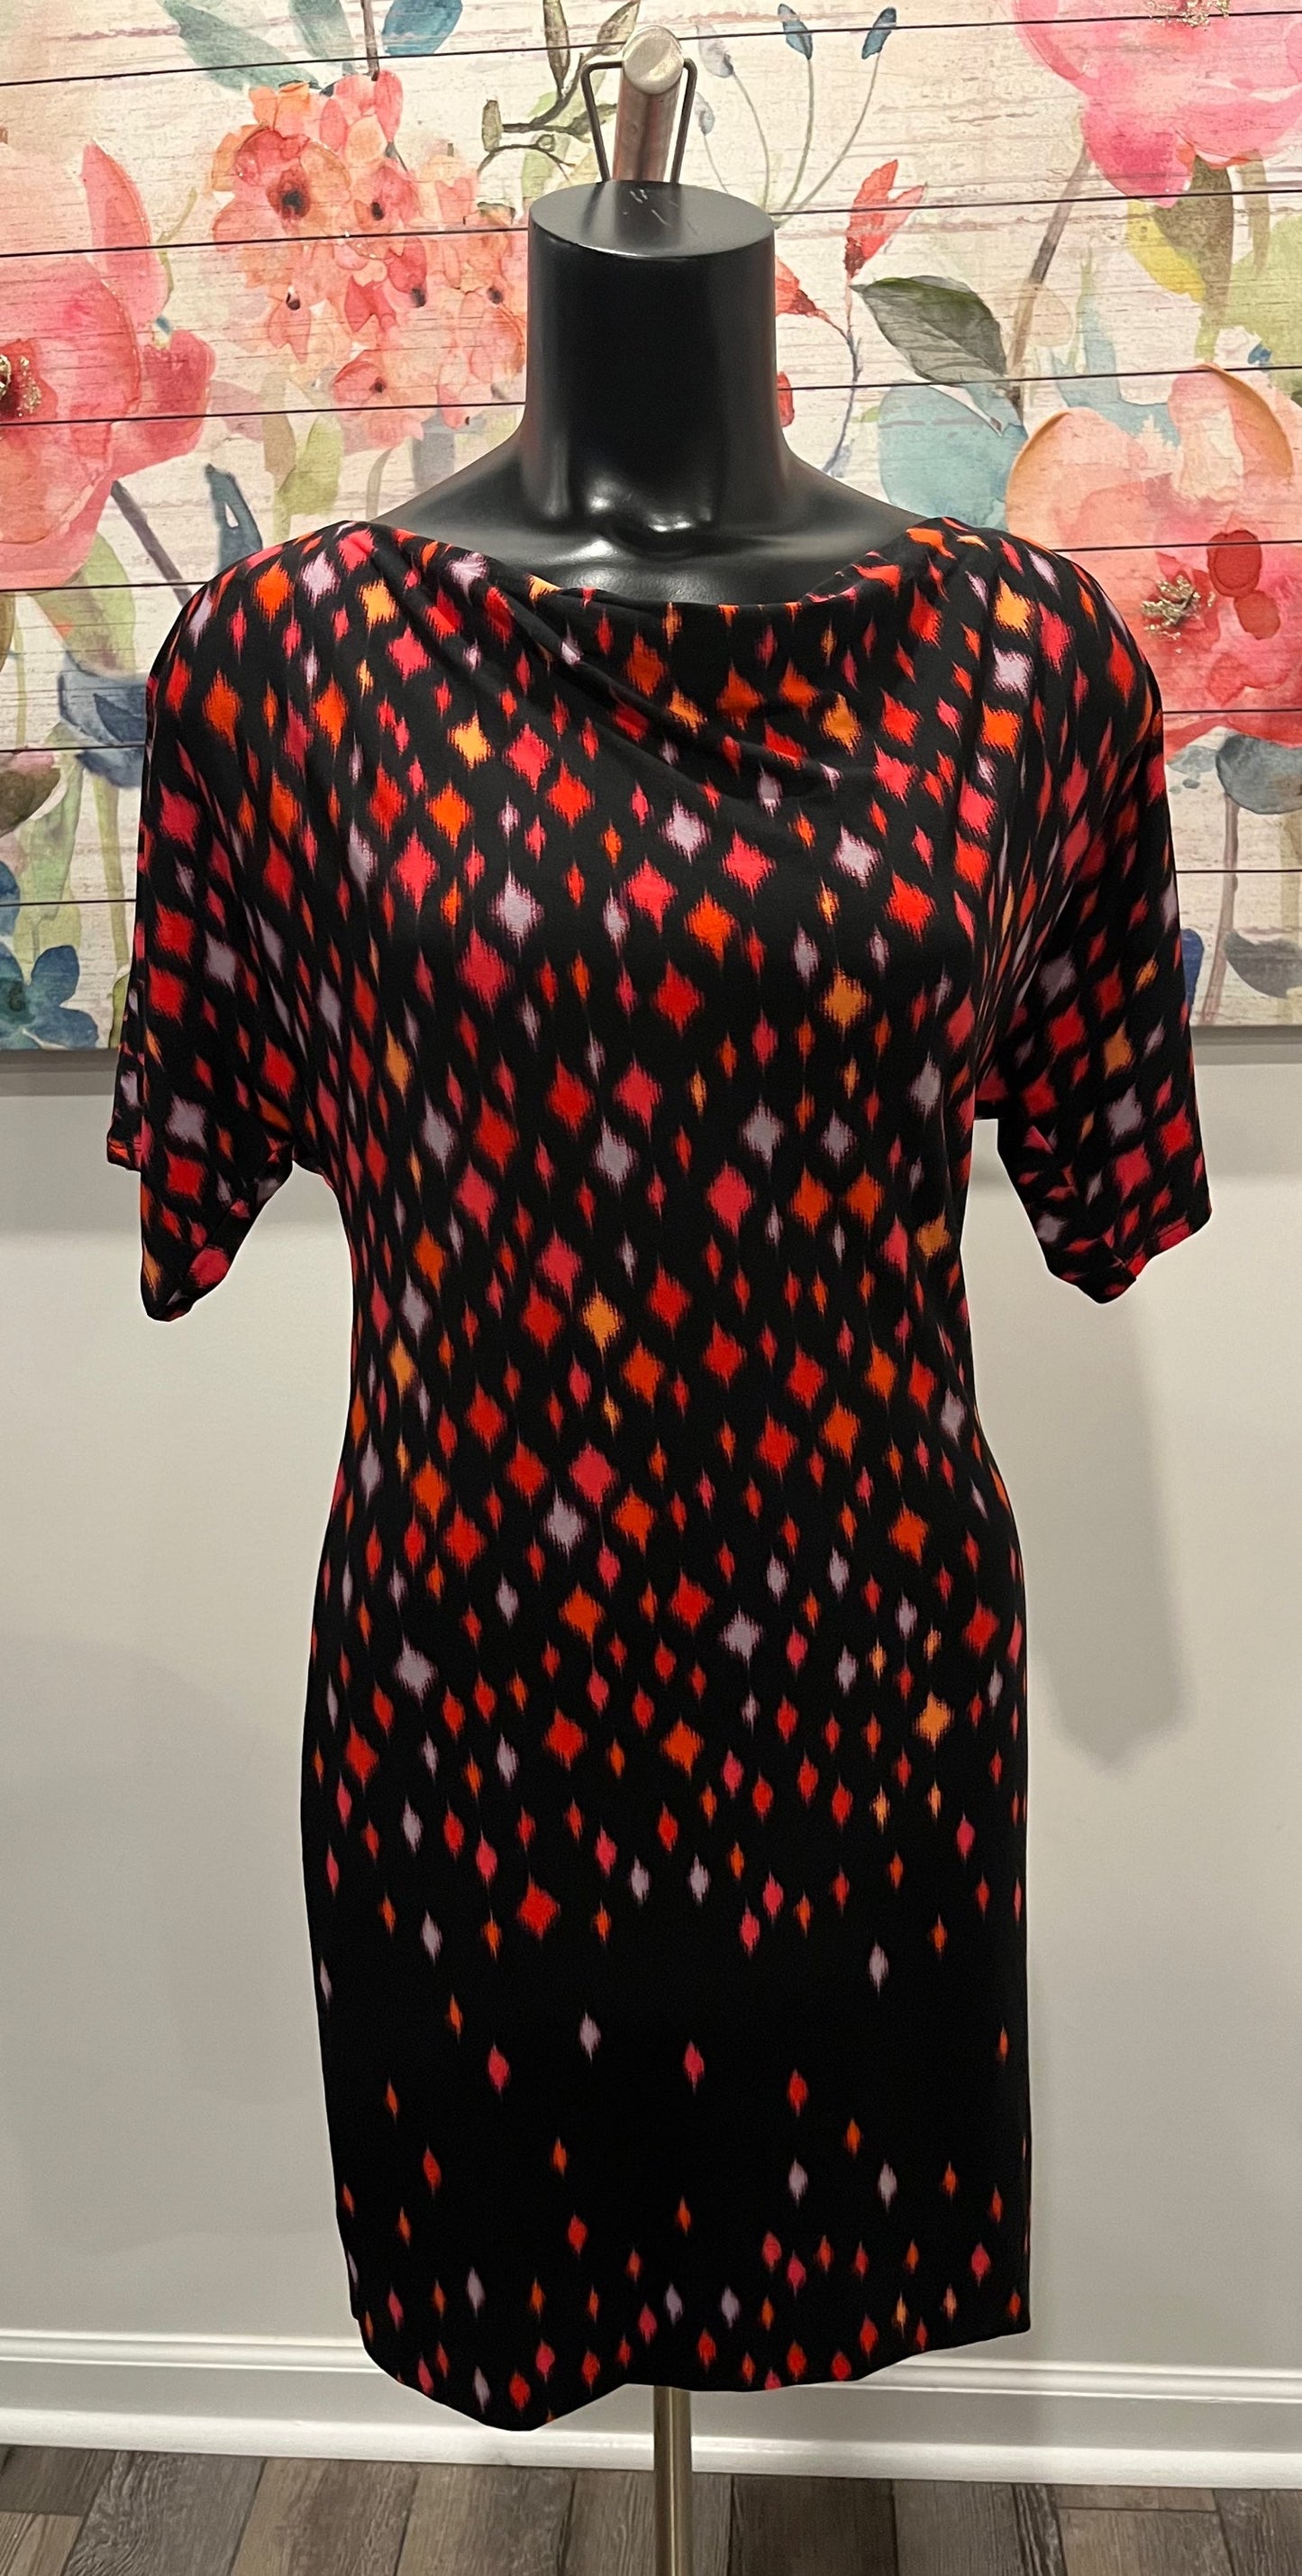 Polka Dot Red & Black London Times Dress - Petite